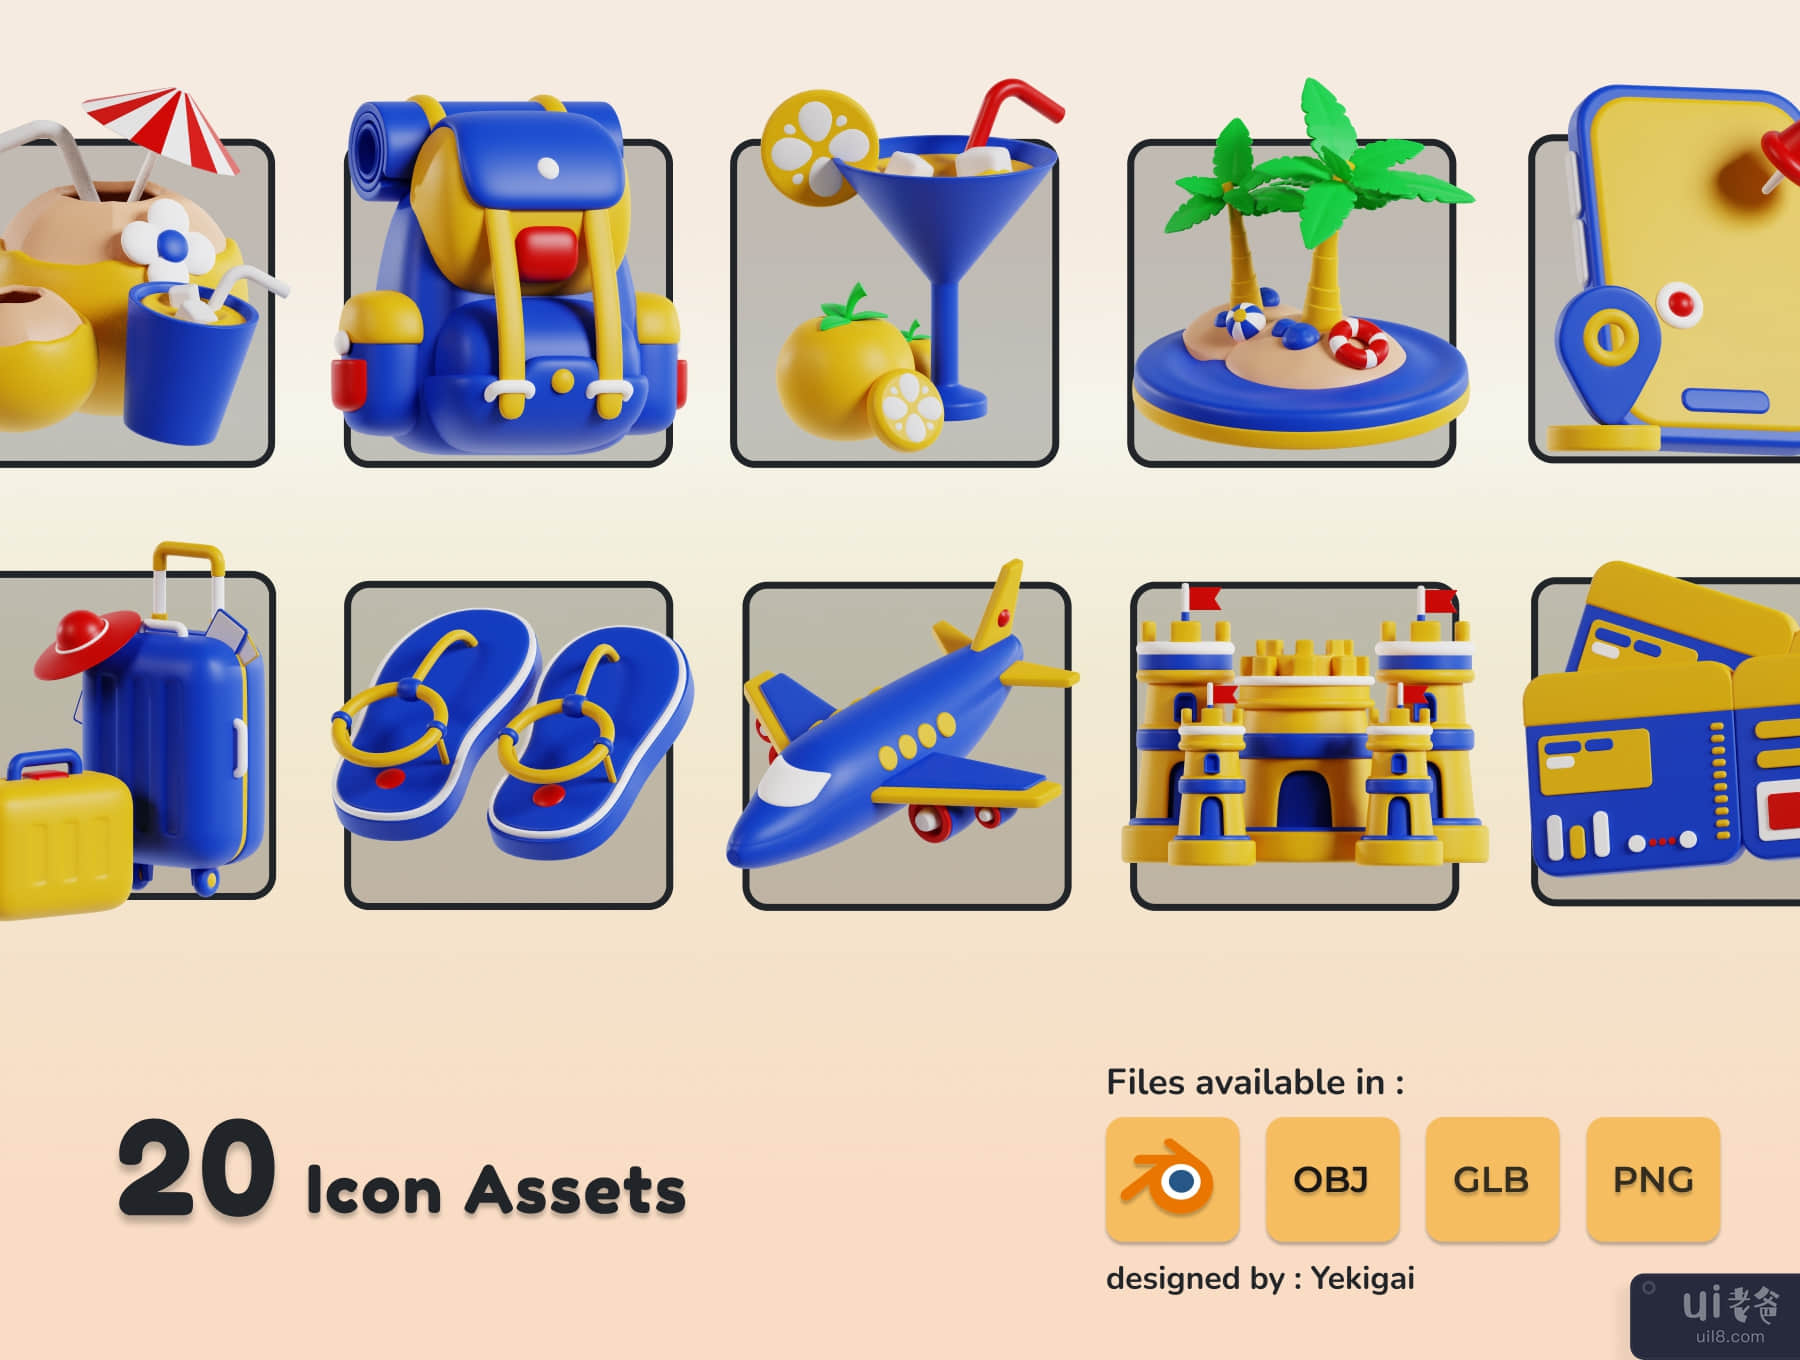 旅行和假日 3D 图标包 (Travel and Holiday 3D Icon Pack)插图